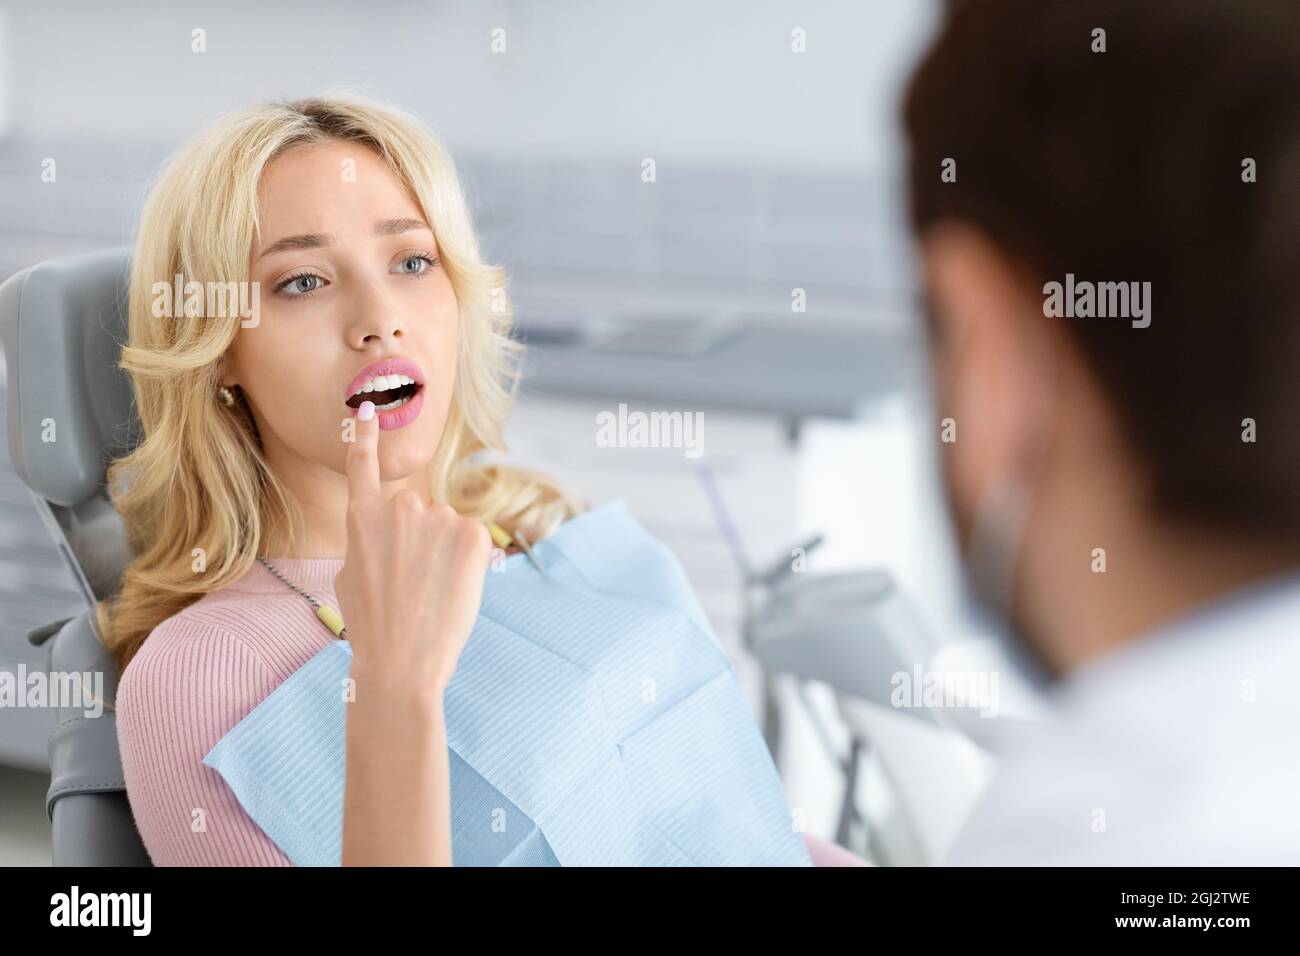 Attraente giovane donna bionda visita clinica dentale, seduta sulla sedia dentale, indicando il dente irritante, sofferente di dolore, avendo conversazione Foto Stock